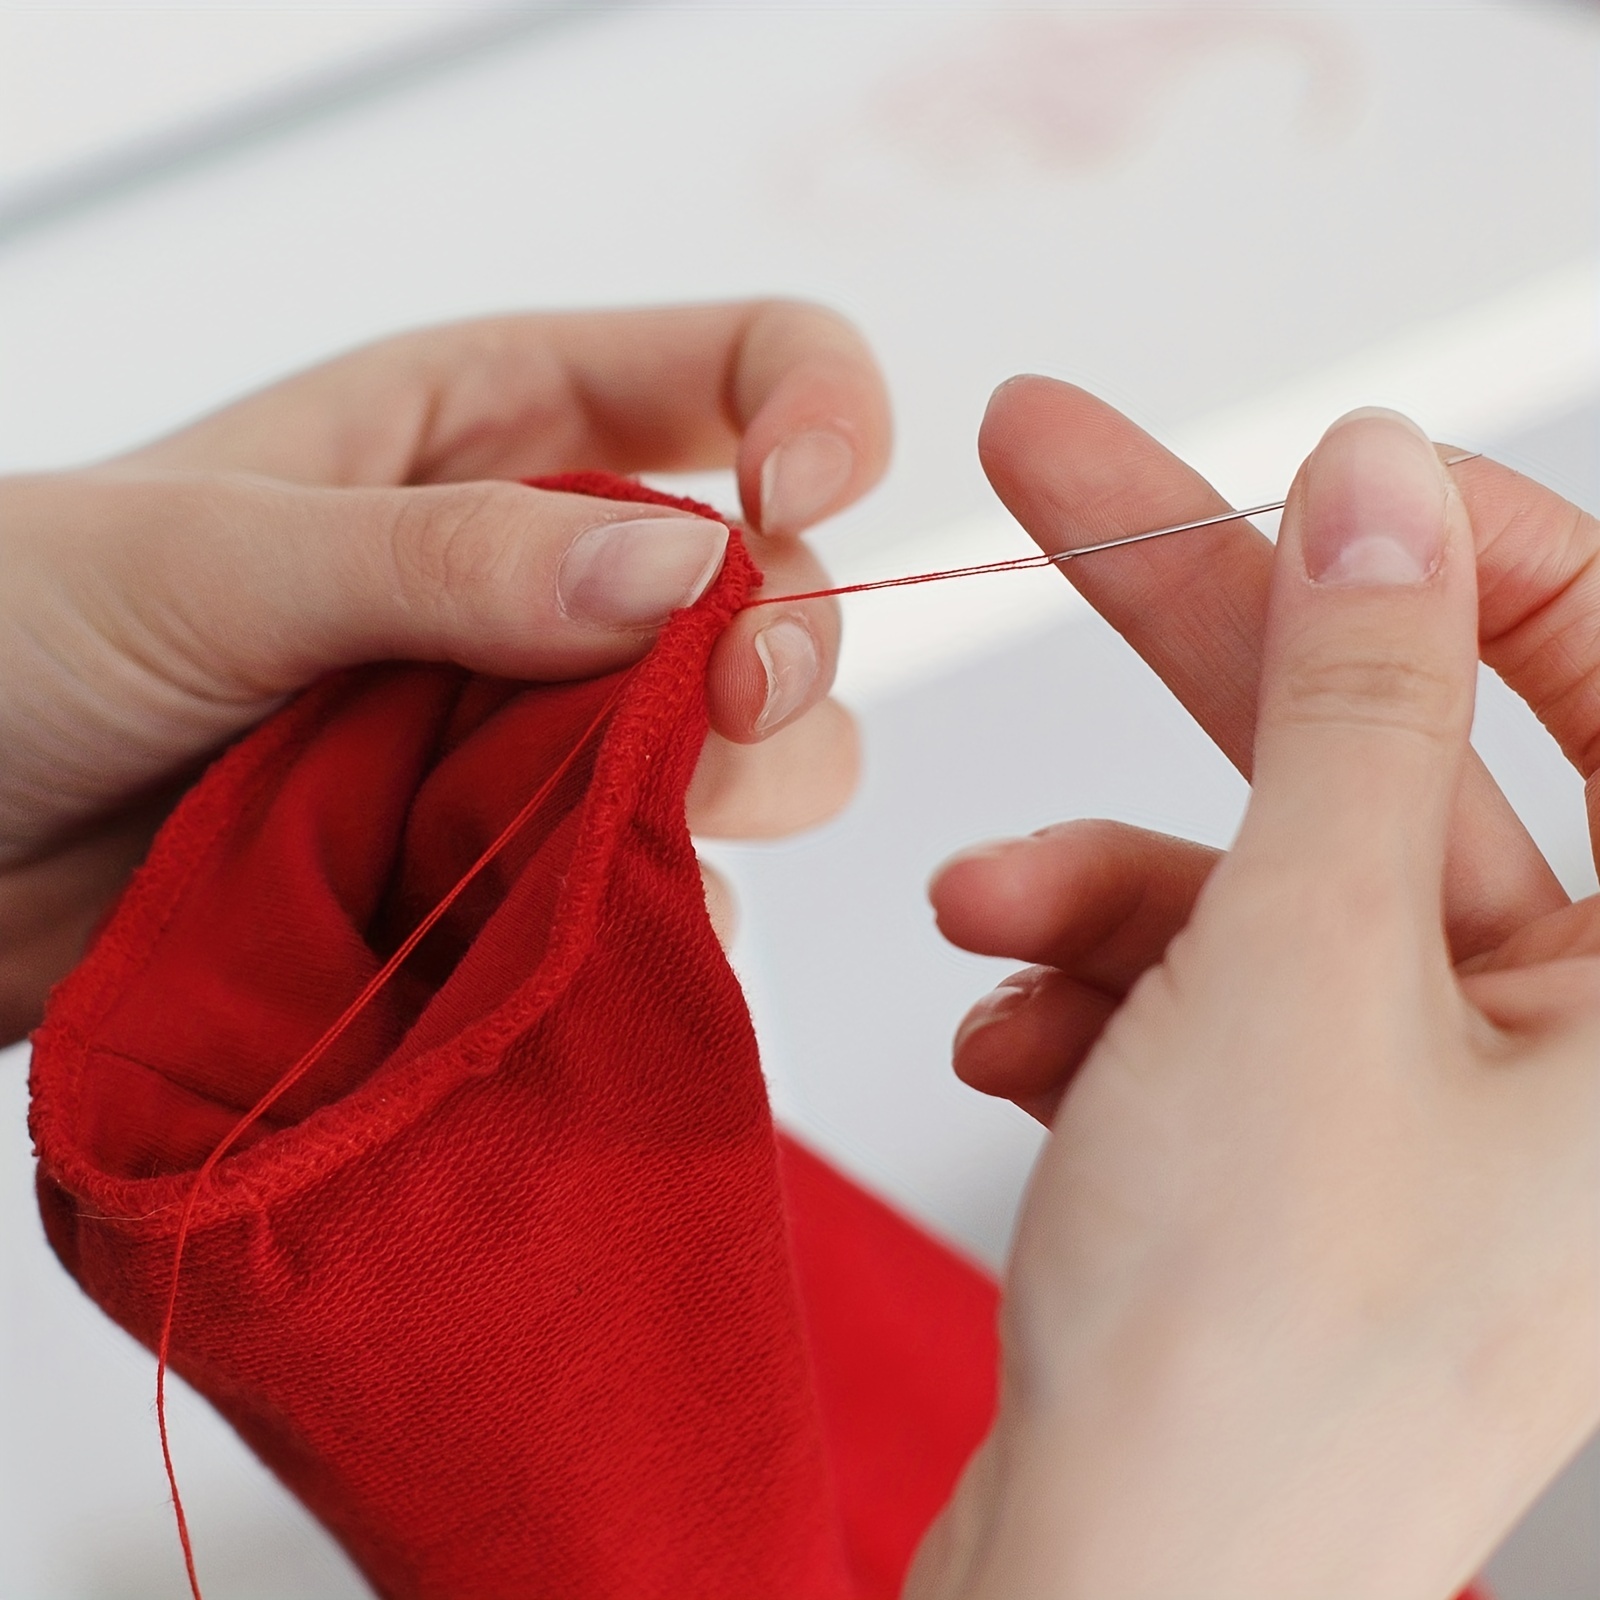 25PCS Large Eye Needles for Hand Sewing Needle Stitching Crafting